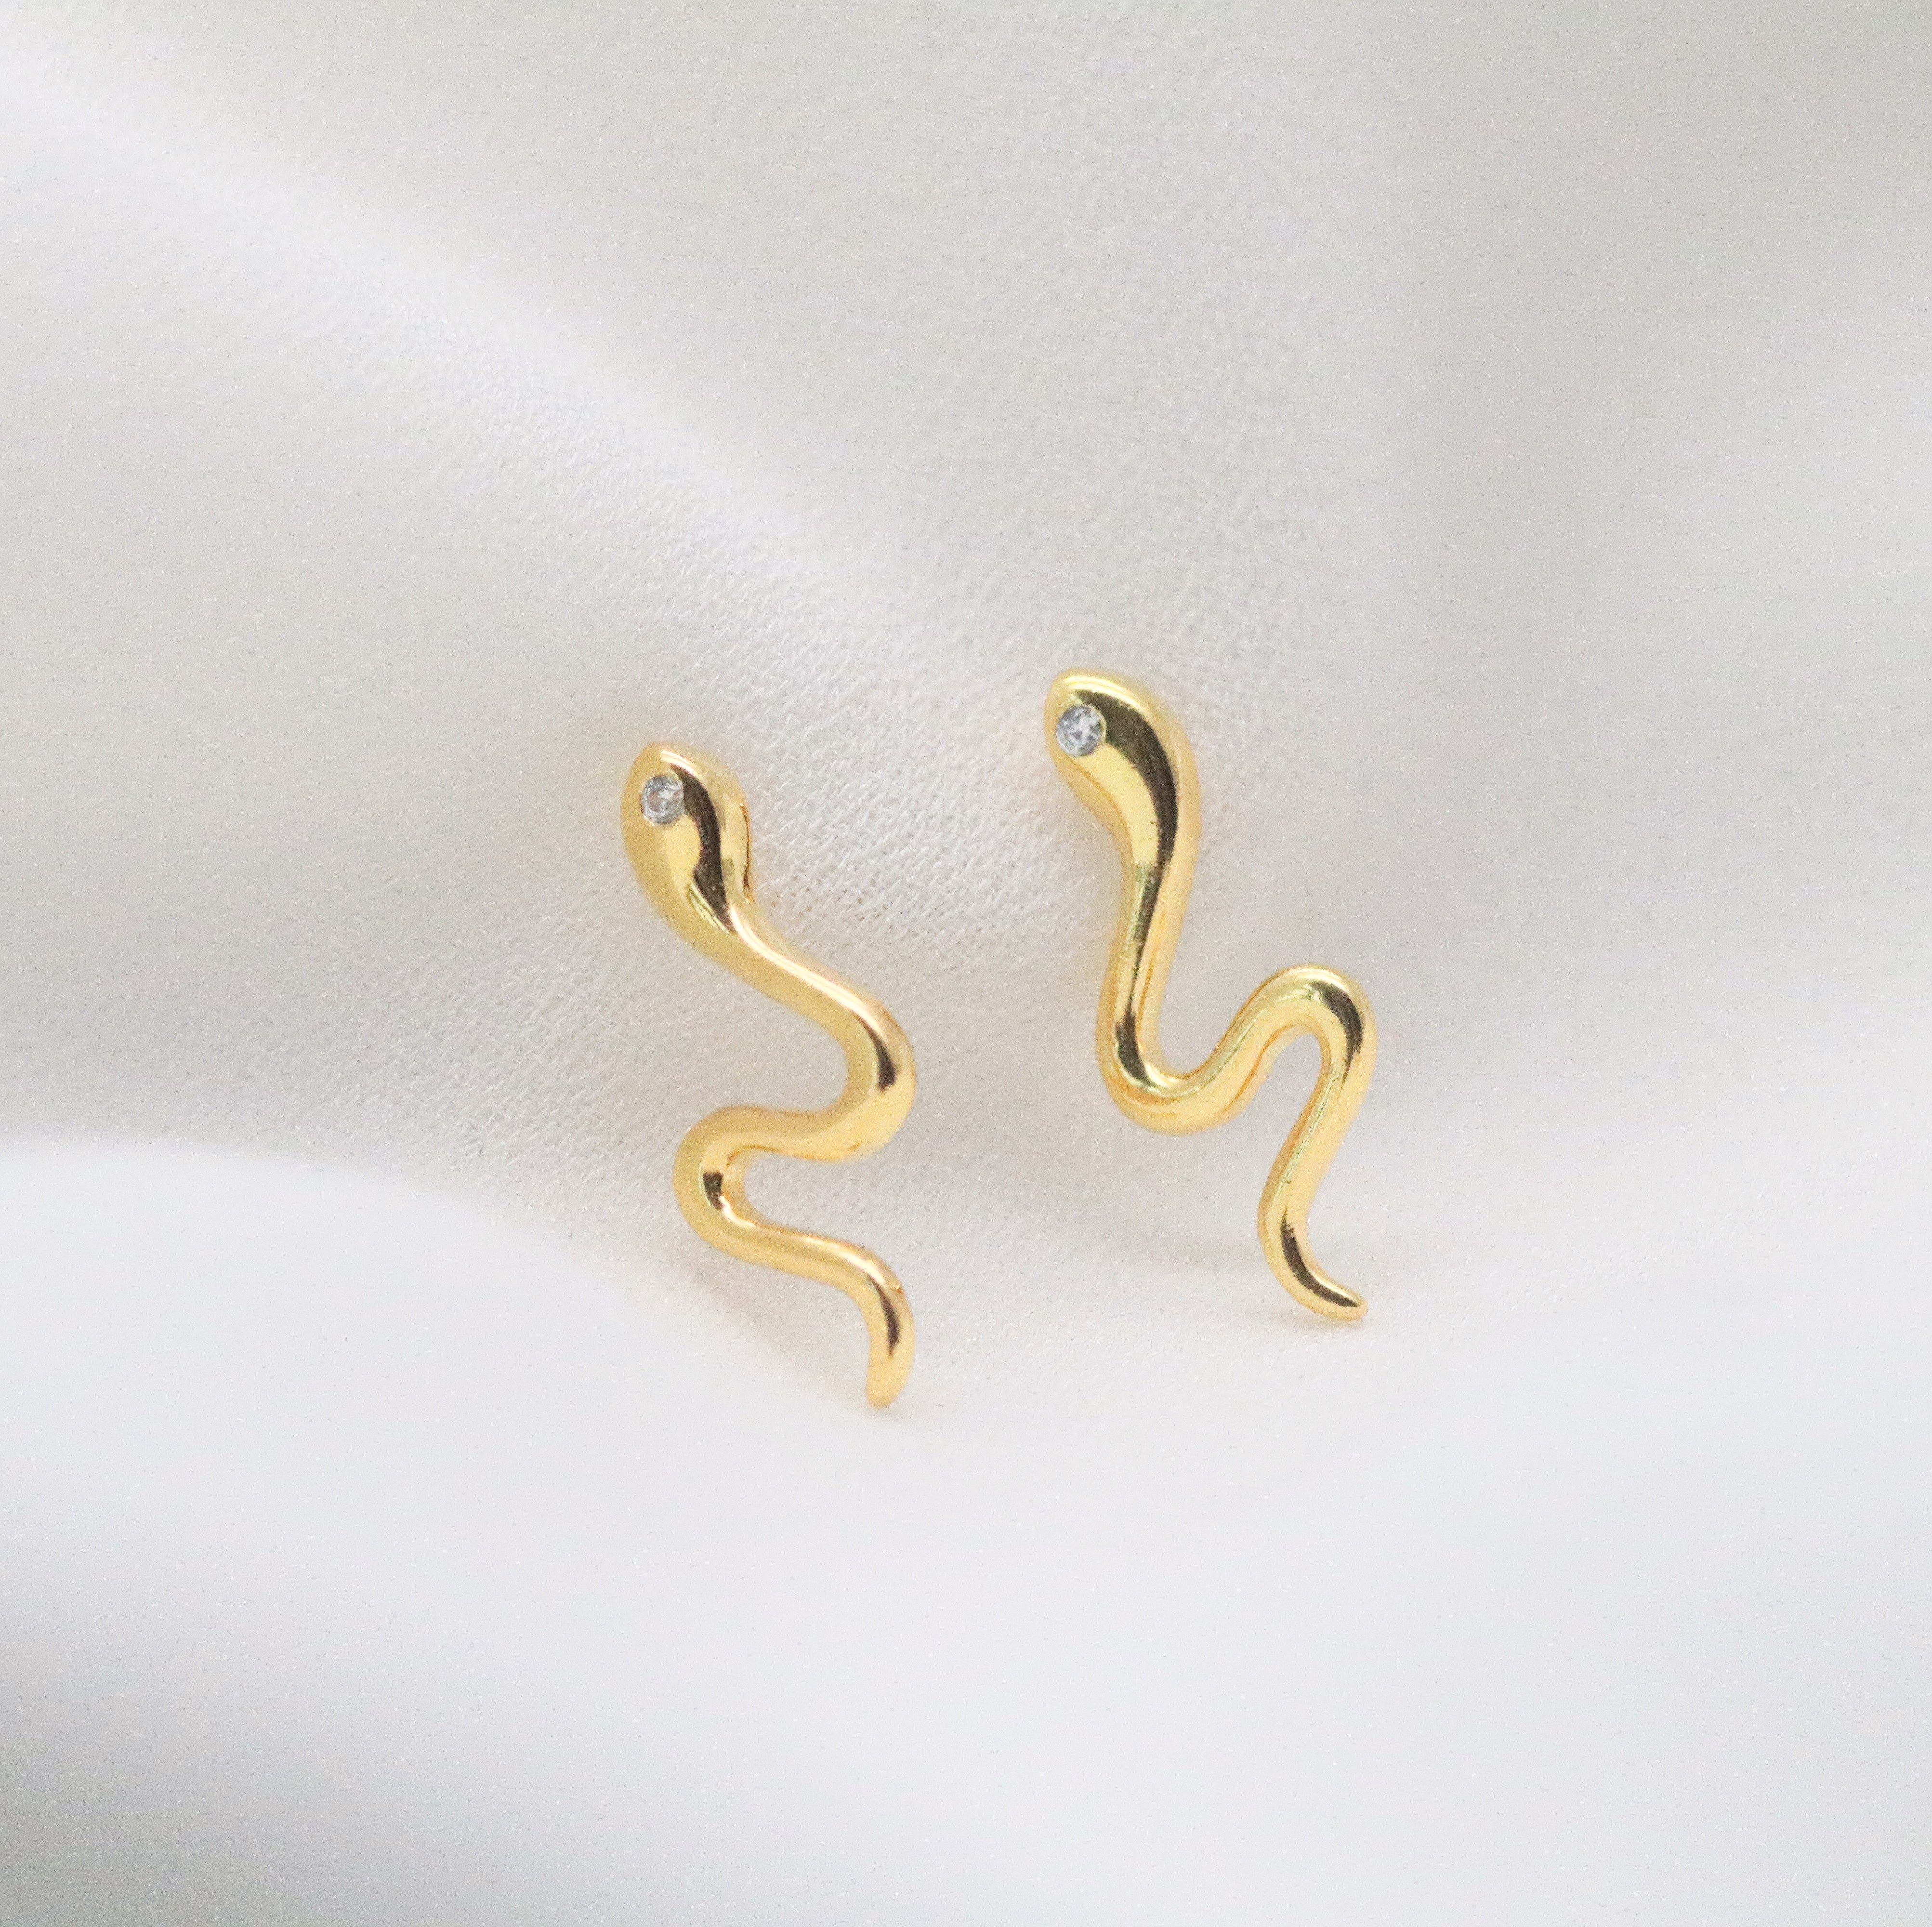 Meideya Jewelry - Small snake stud earrings